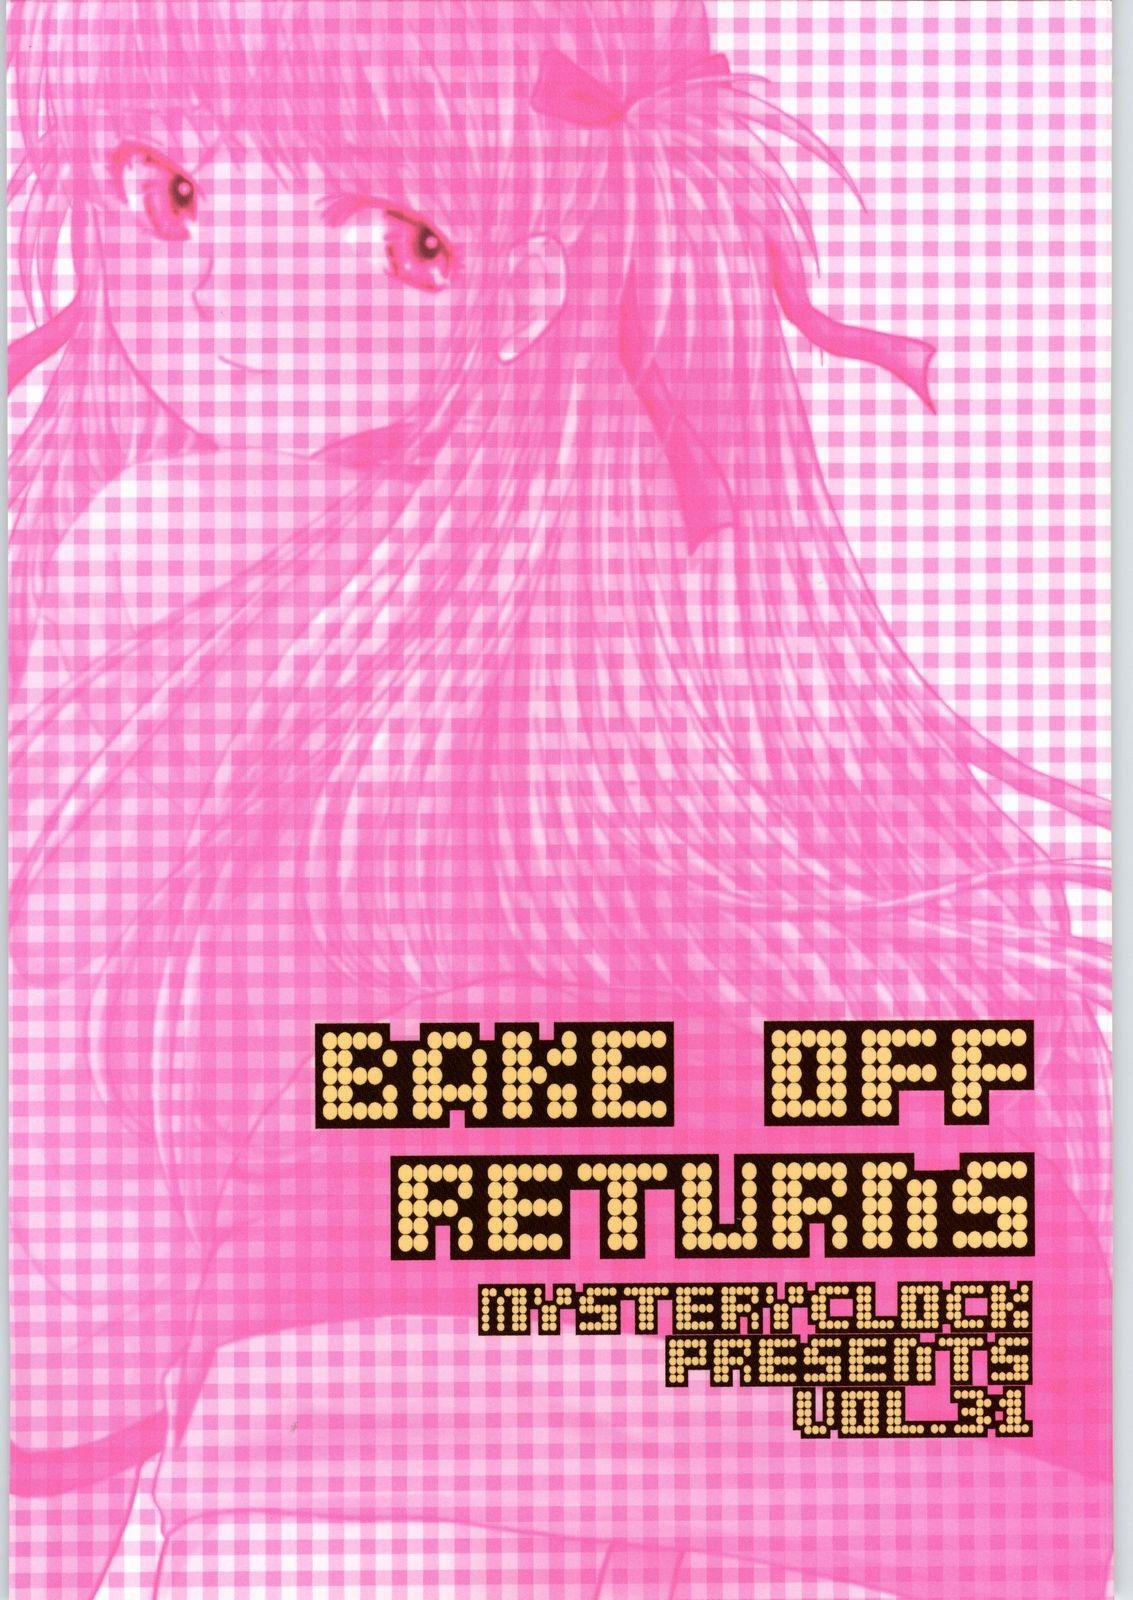 BAKE OFF RETURNS 31